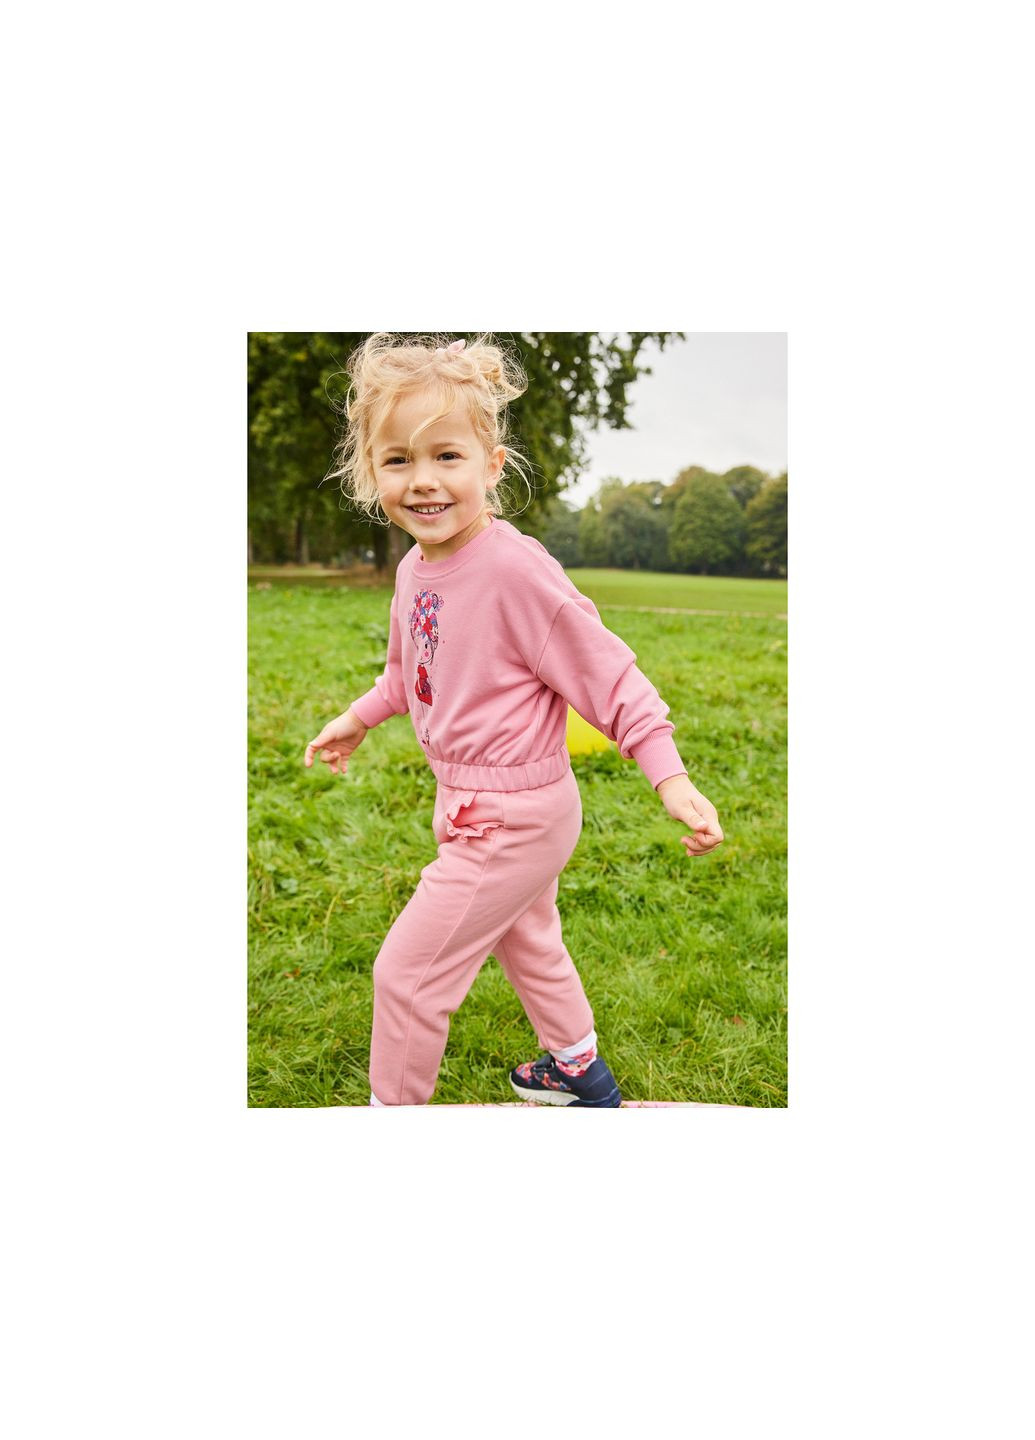 Lupilu свитшот двунитка для девочки 435101 рисунок розовый спортивный, повседневный, кэжуал хлопок, эластан